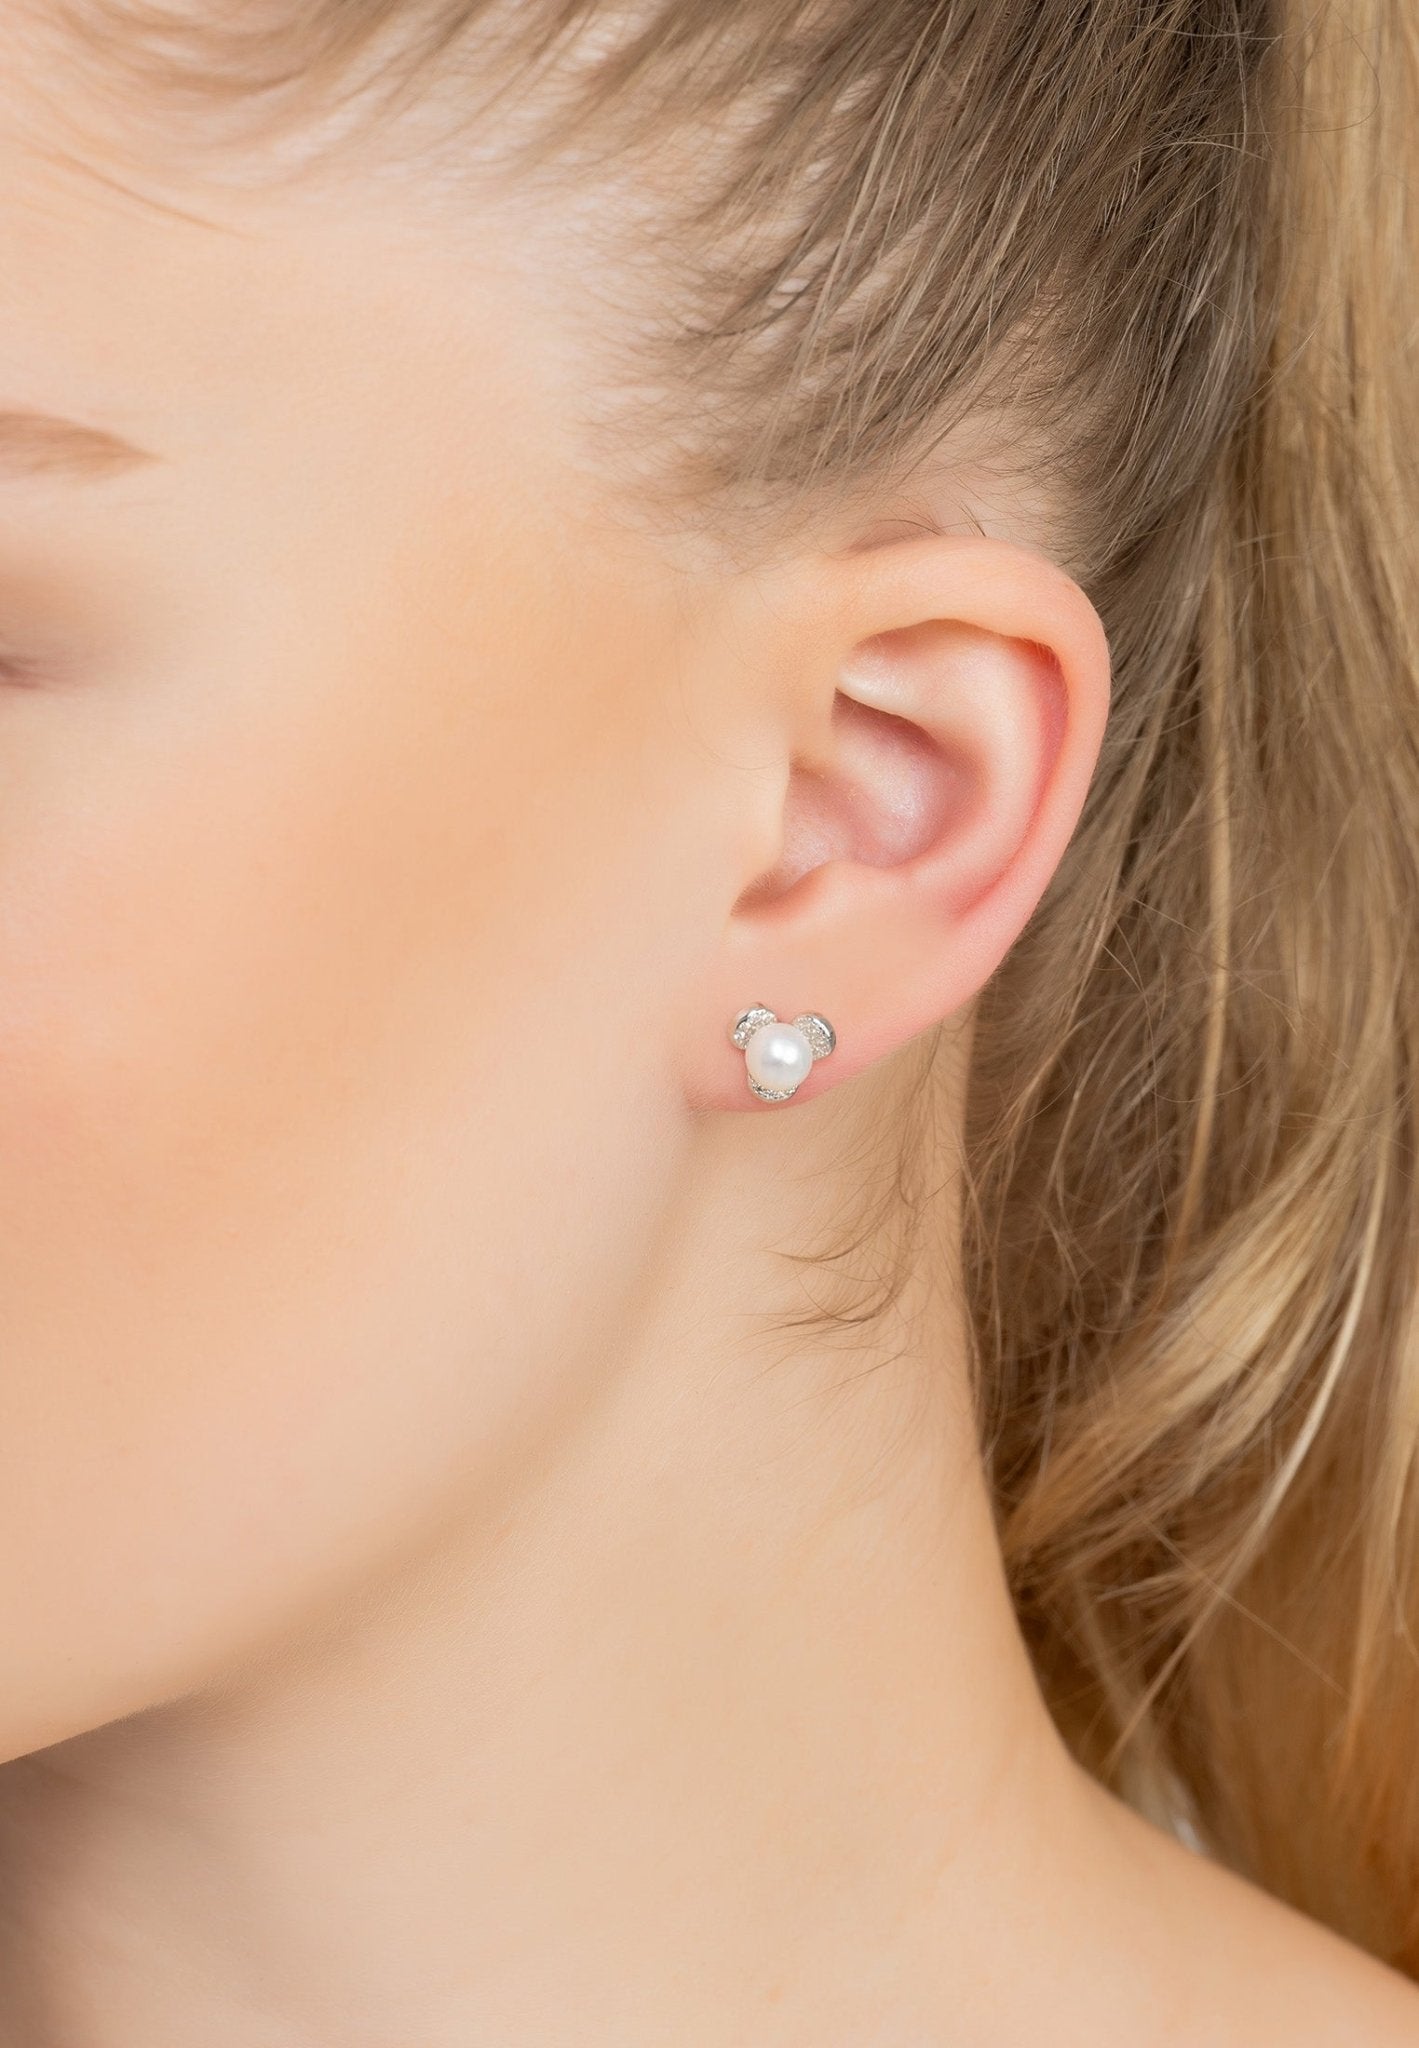 Pearl Posy Stud Earrings Silver - LATELITA Earrings